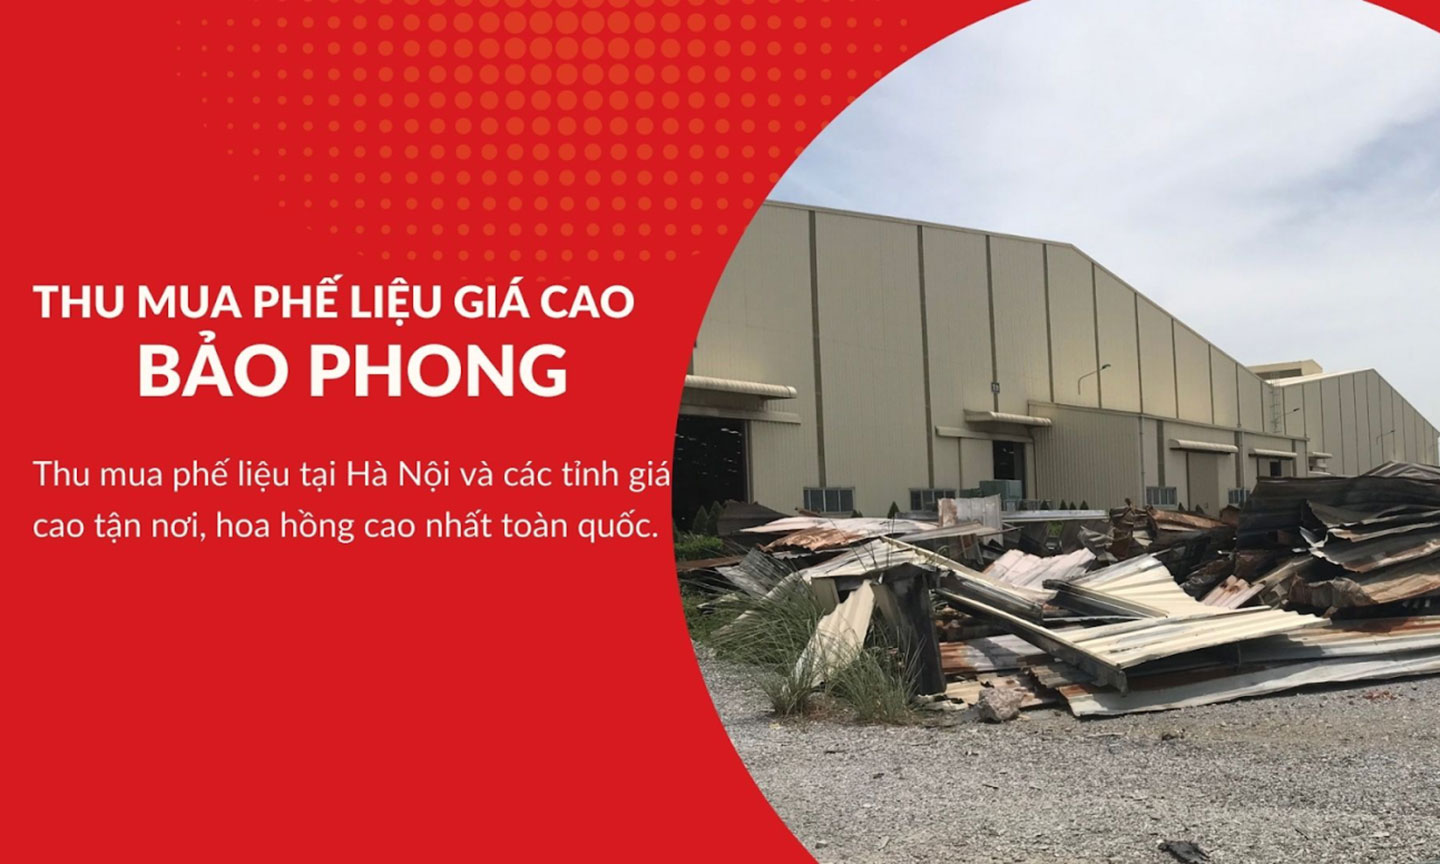 Phế liệu Bảo Phong - công ty thu mua phế liệu Hà Nội và 63 tỉnh giá cao.